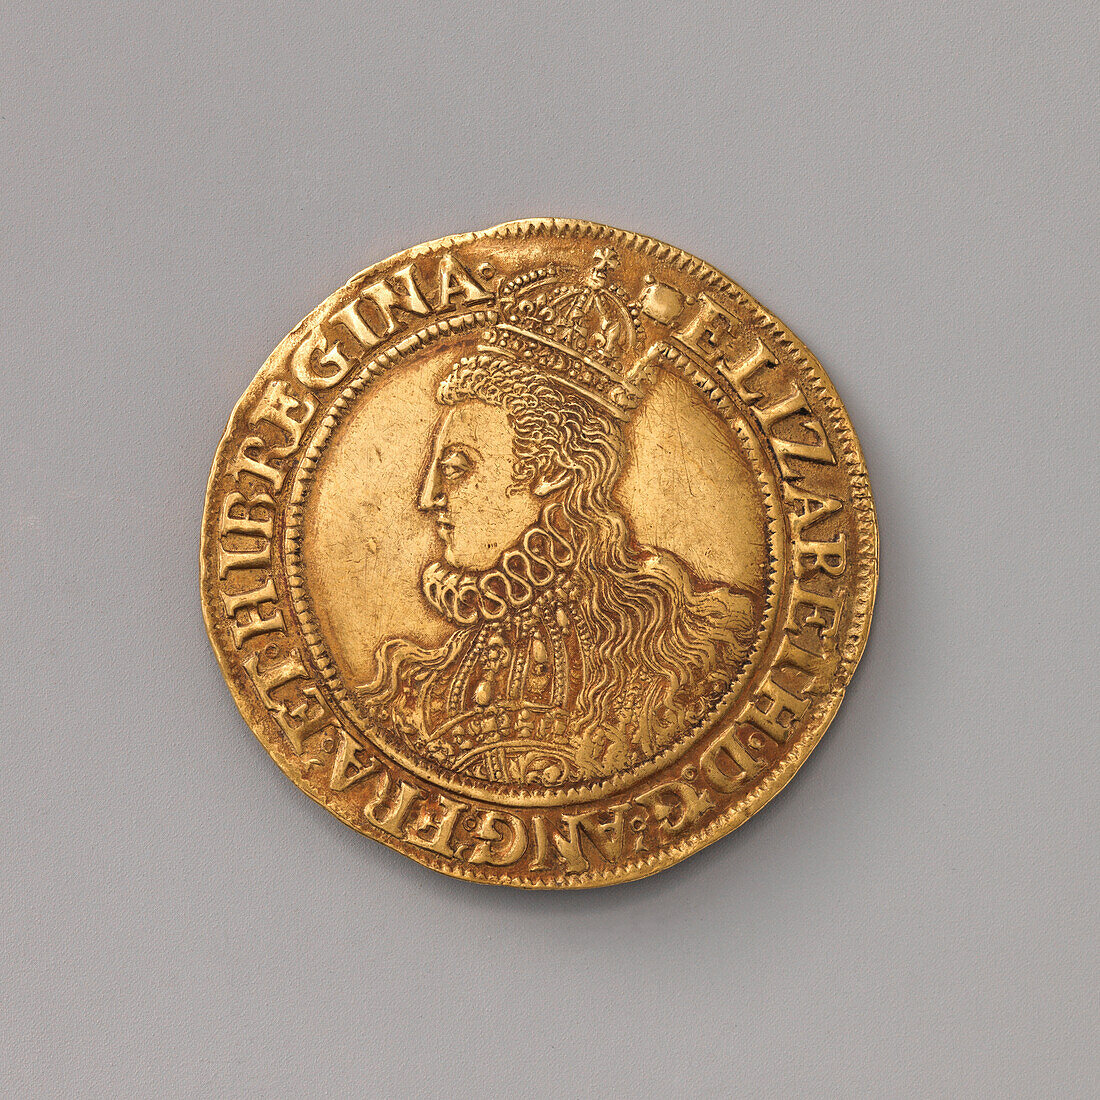 Elizabeth I gold coin